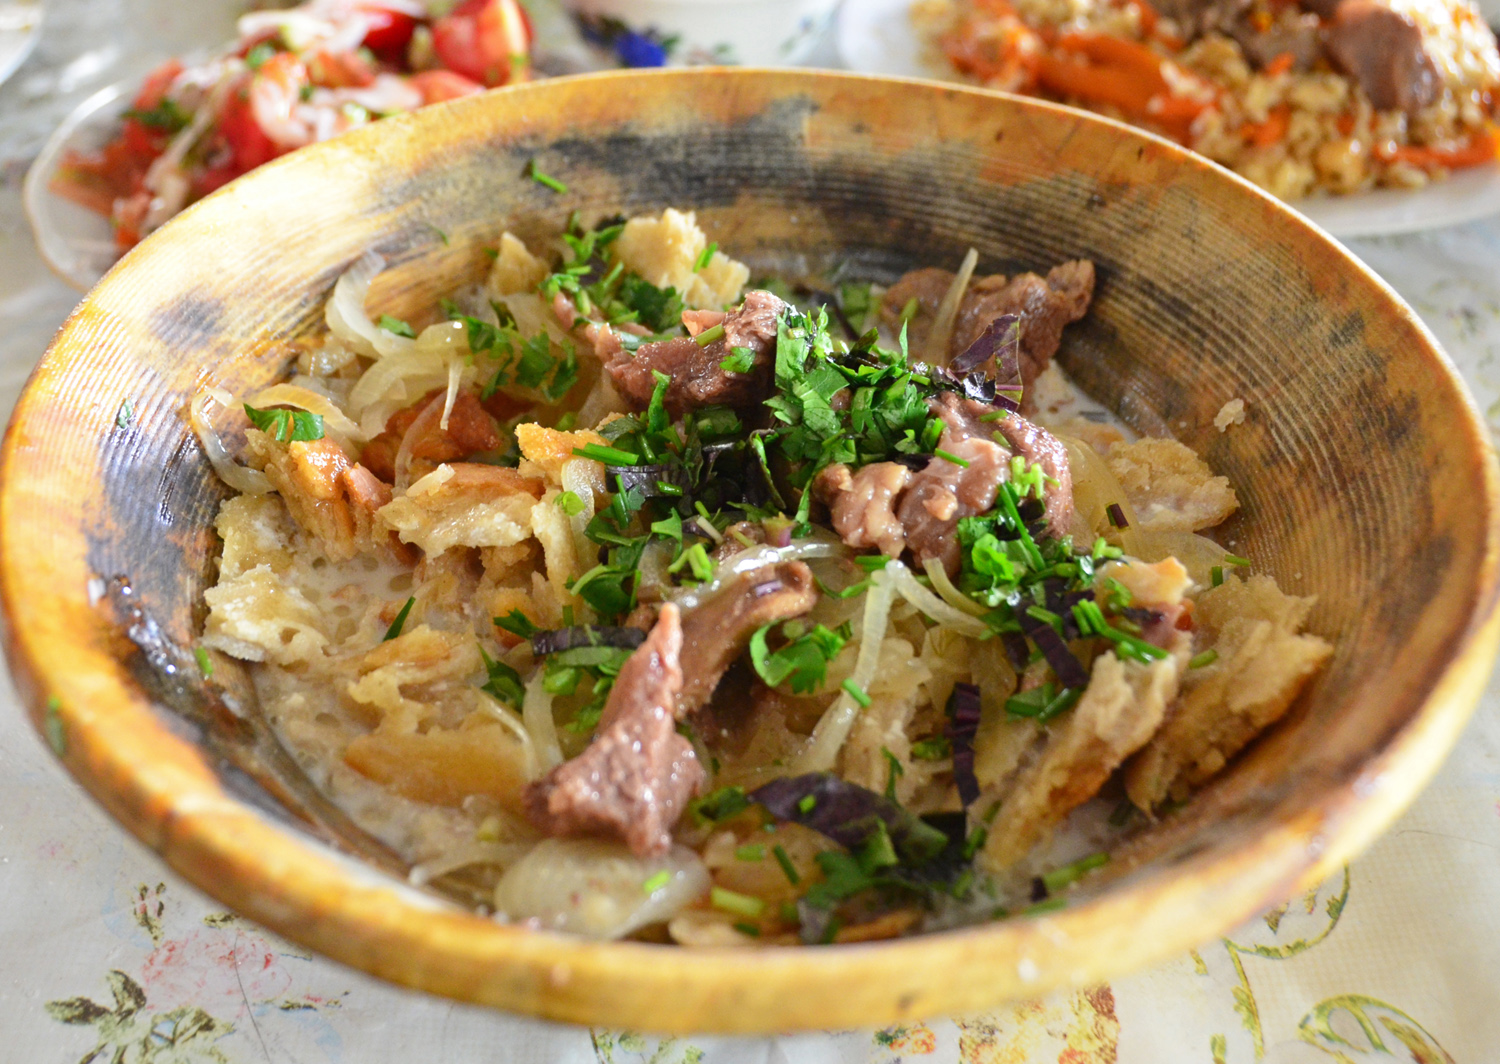 Dushanbe - Shaftoluzor Restaurant - Qurtob